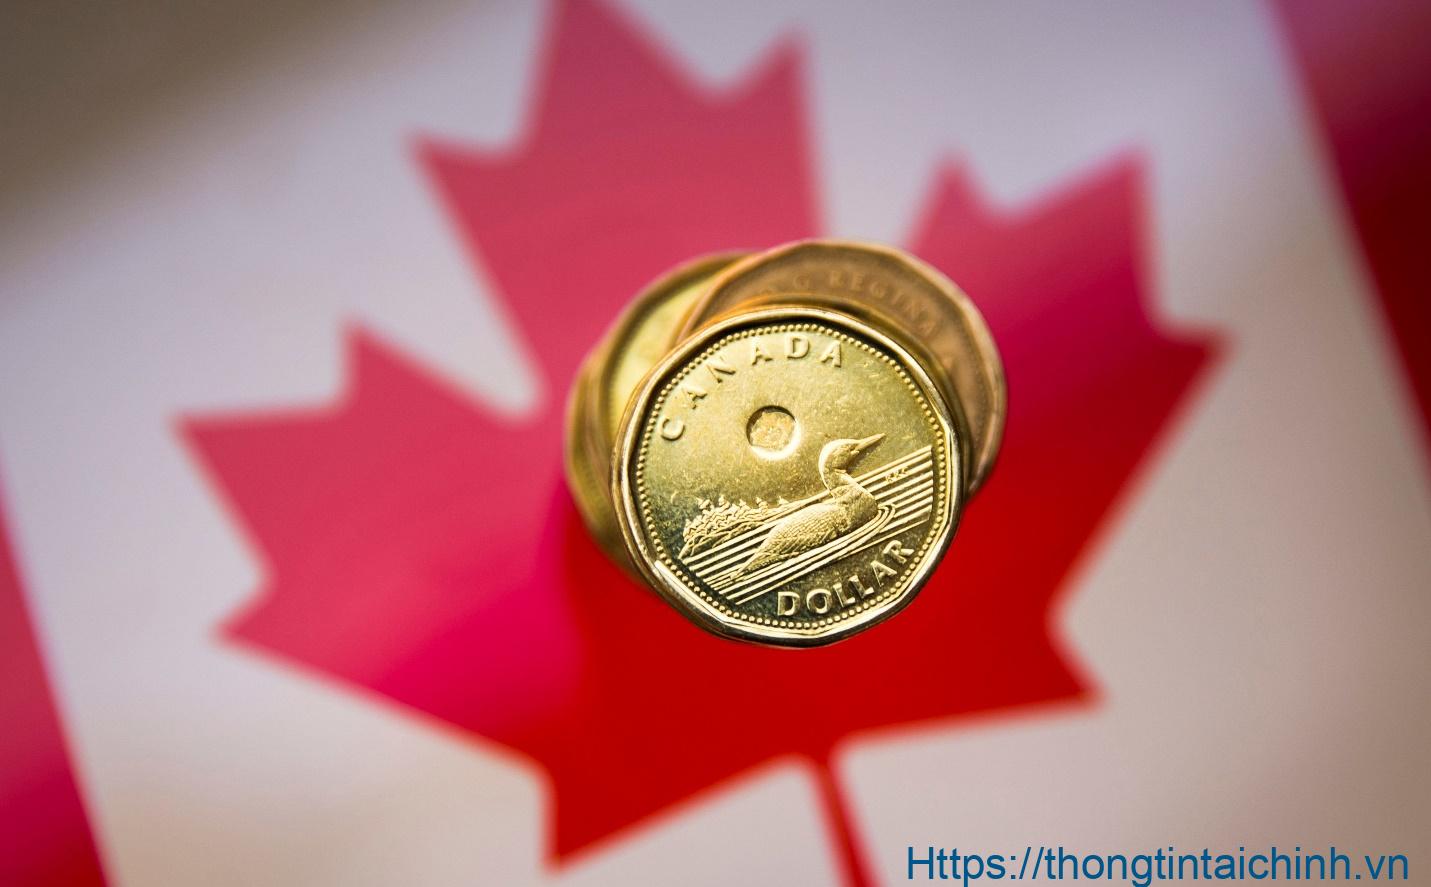 1 đô la Canada bằng bao nhiêu tiền Việt? 